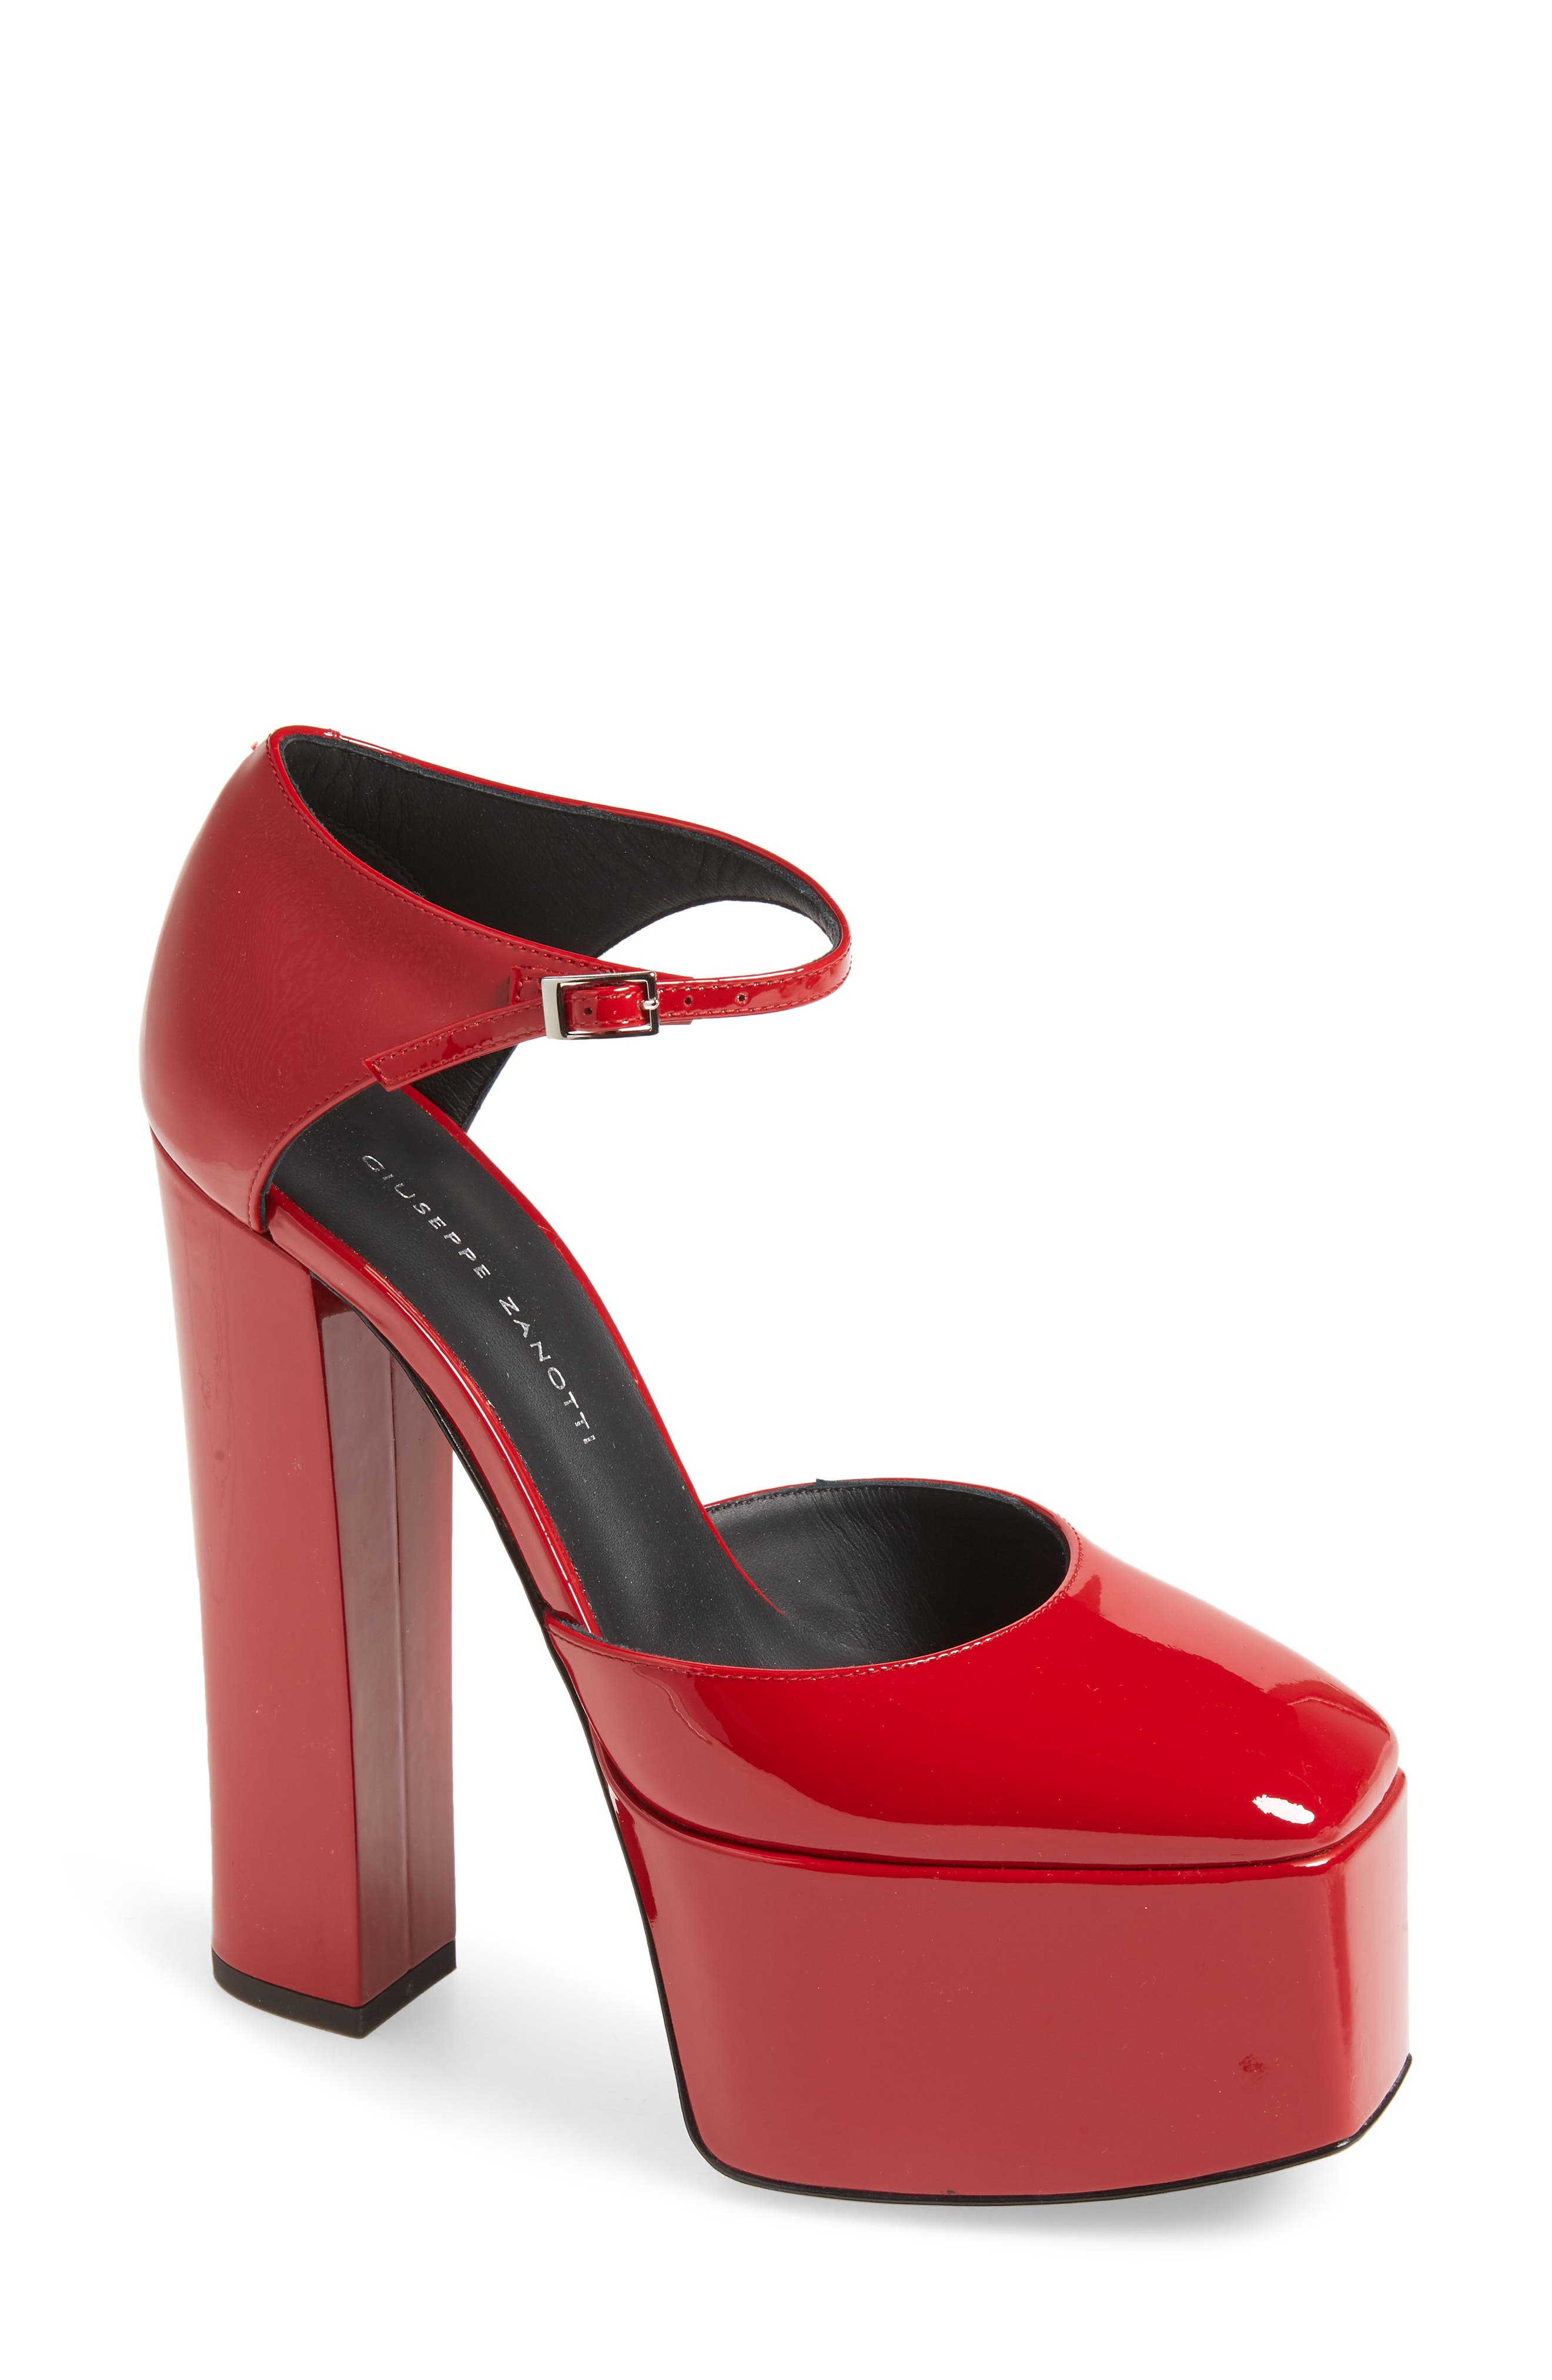 Red Designer Shoes: Heels \u0026 Pumps 